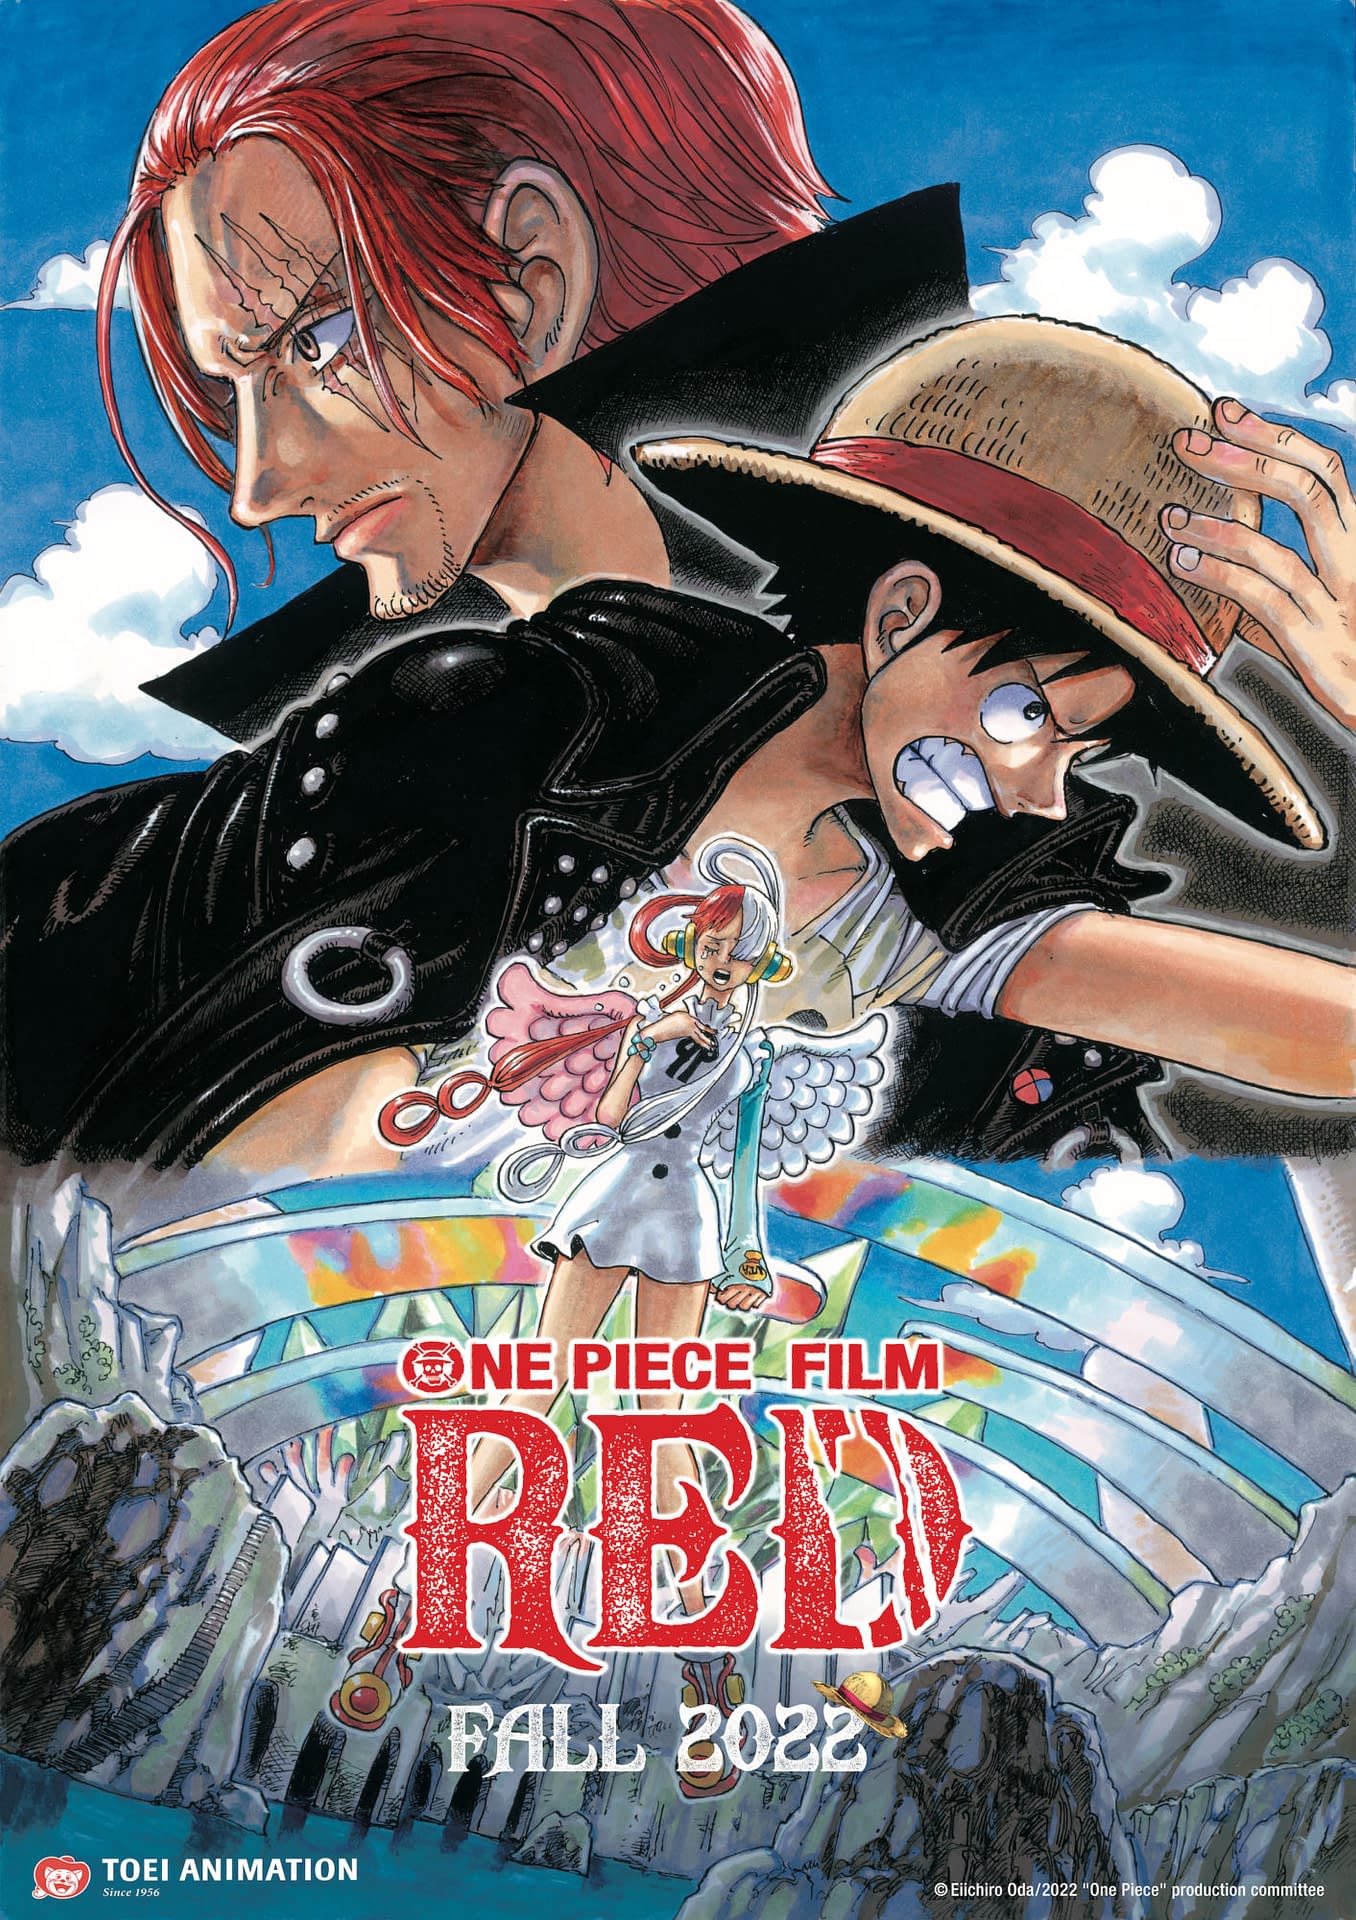 One Piece trailer unveils Netflix's epic live-action anime adaptation